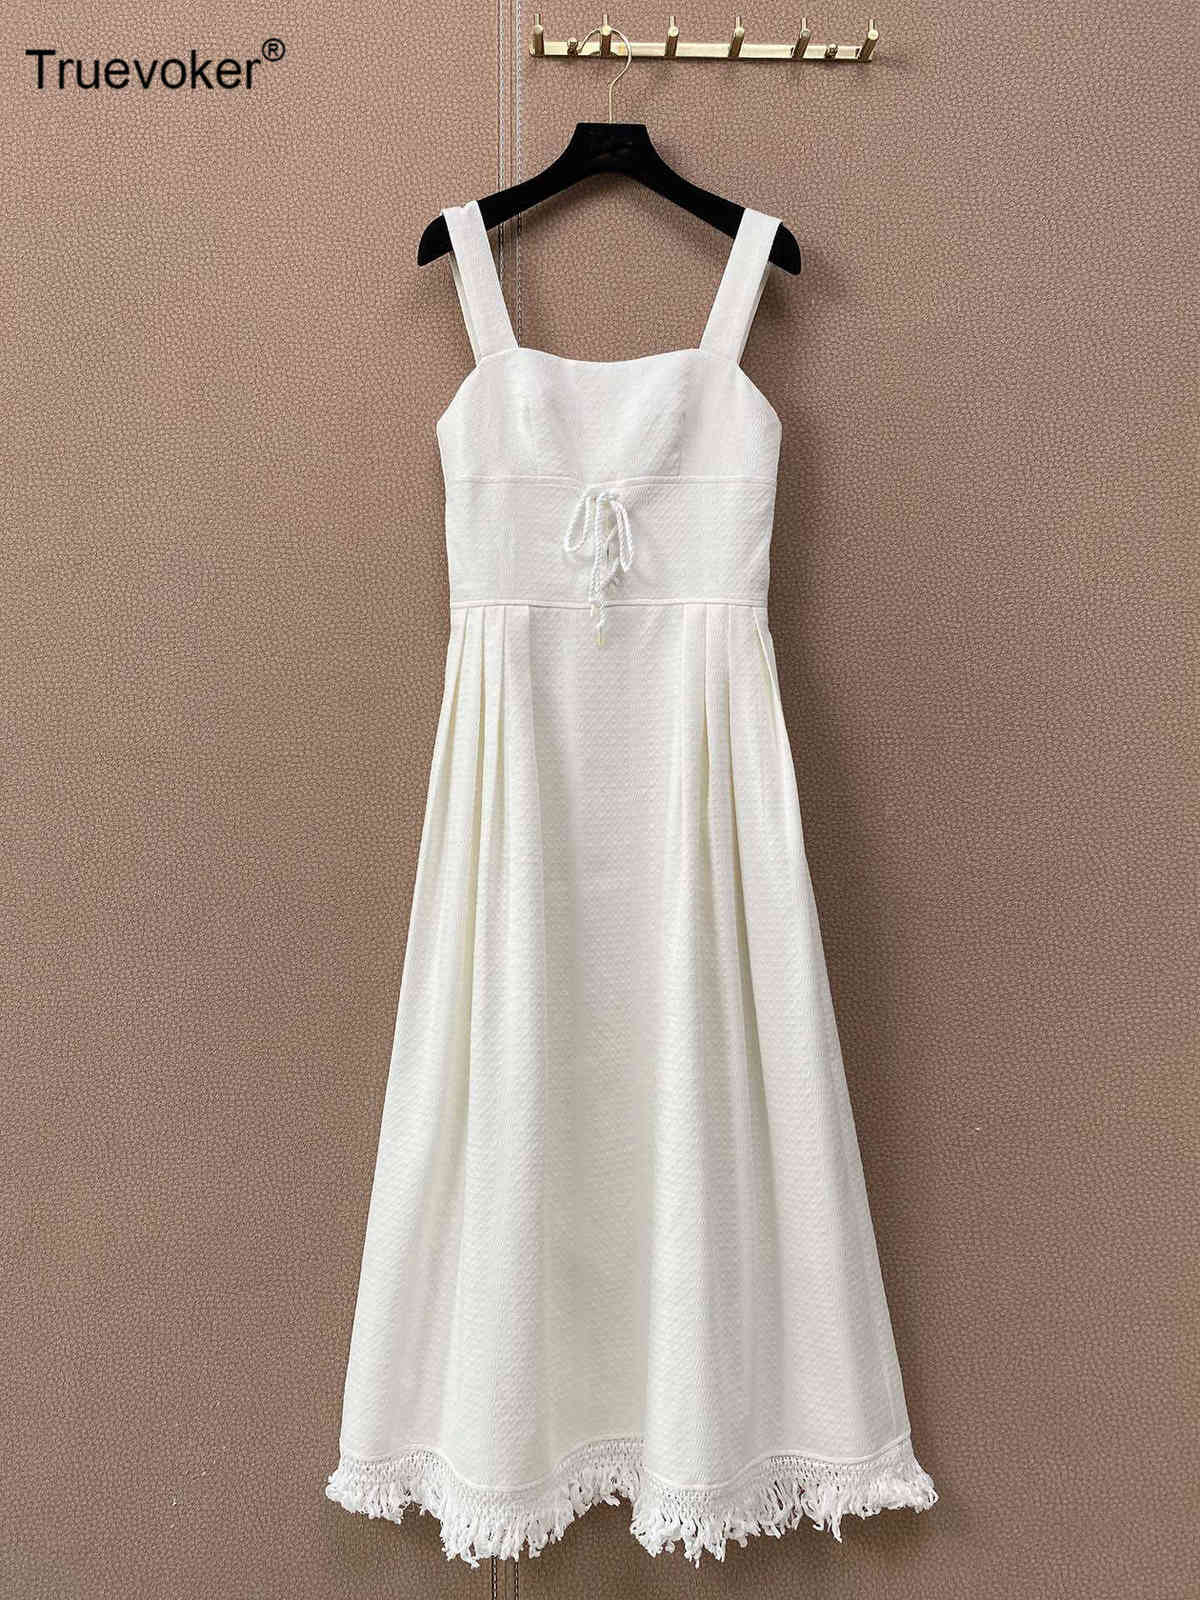 

Truevoker Summer Runway Fashion Lace Up Slip Vestido's Brief White Tassel Midi Spaghetti Strap Resort Dresses 210602, Ivory